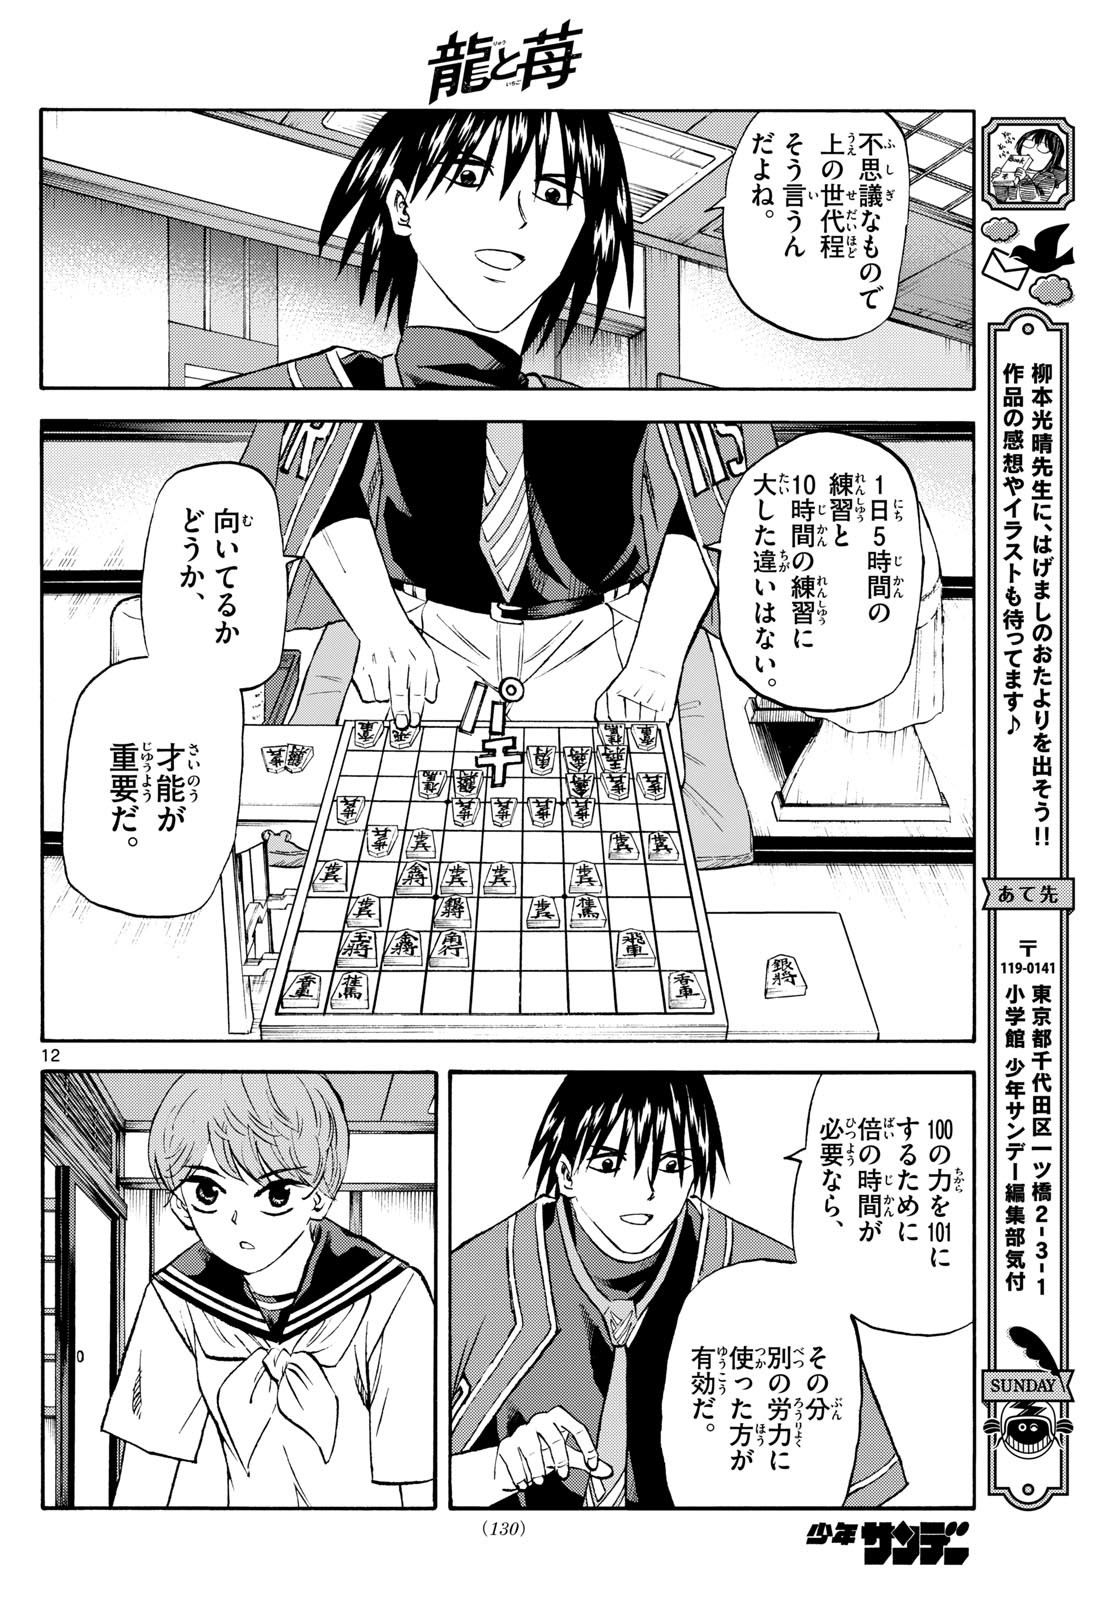 Tatsu to Ichigo - Chapter 197 - Page 12